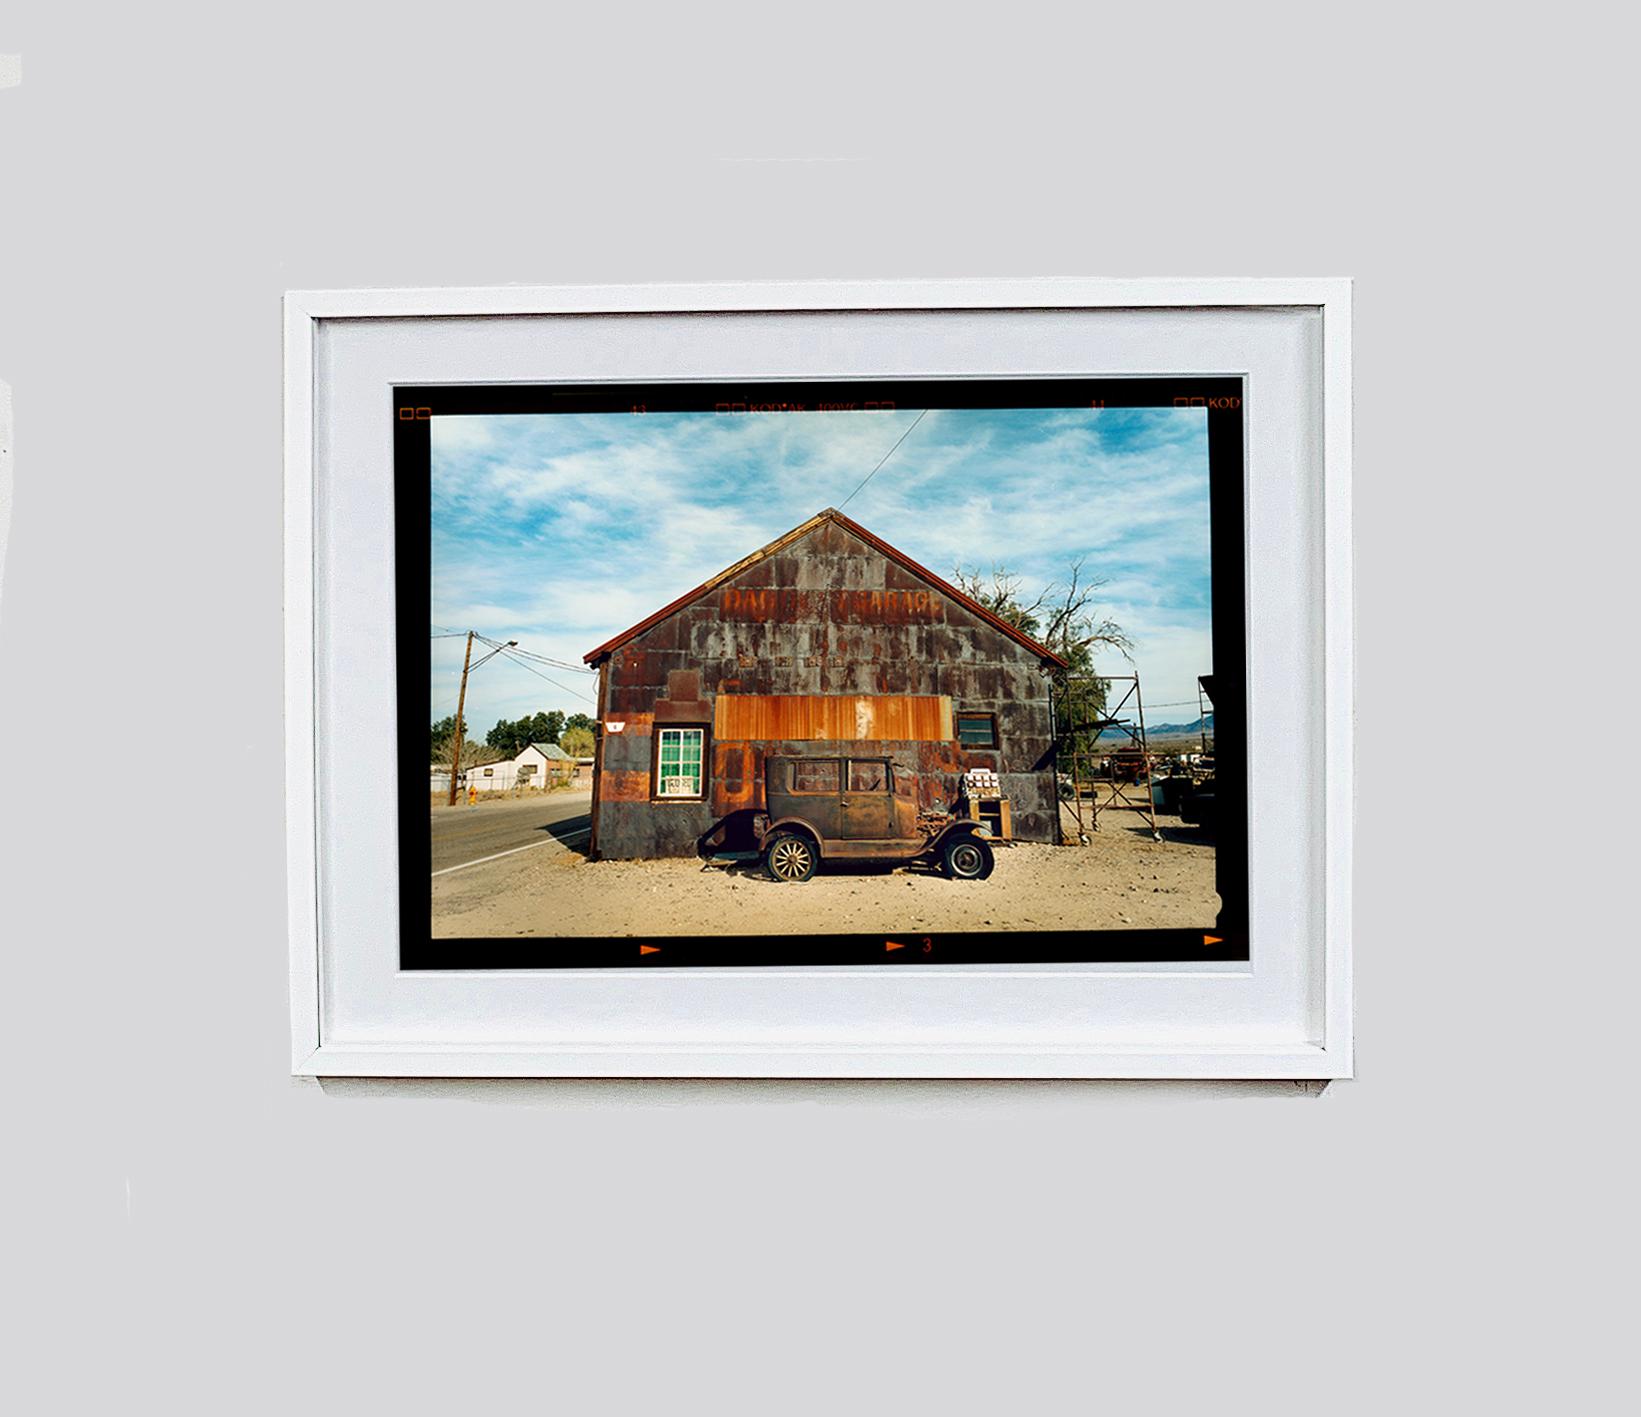 Modell T und Garage, Daggett, Kalifornien – Farbfotografie (Zeitgenössisch), Photograph, von Richard Heeps